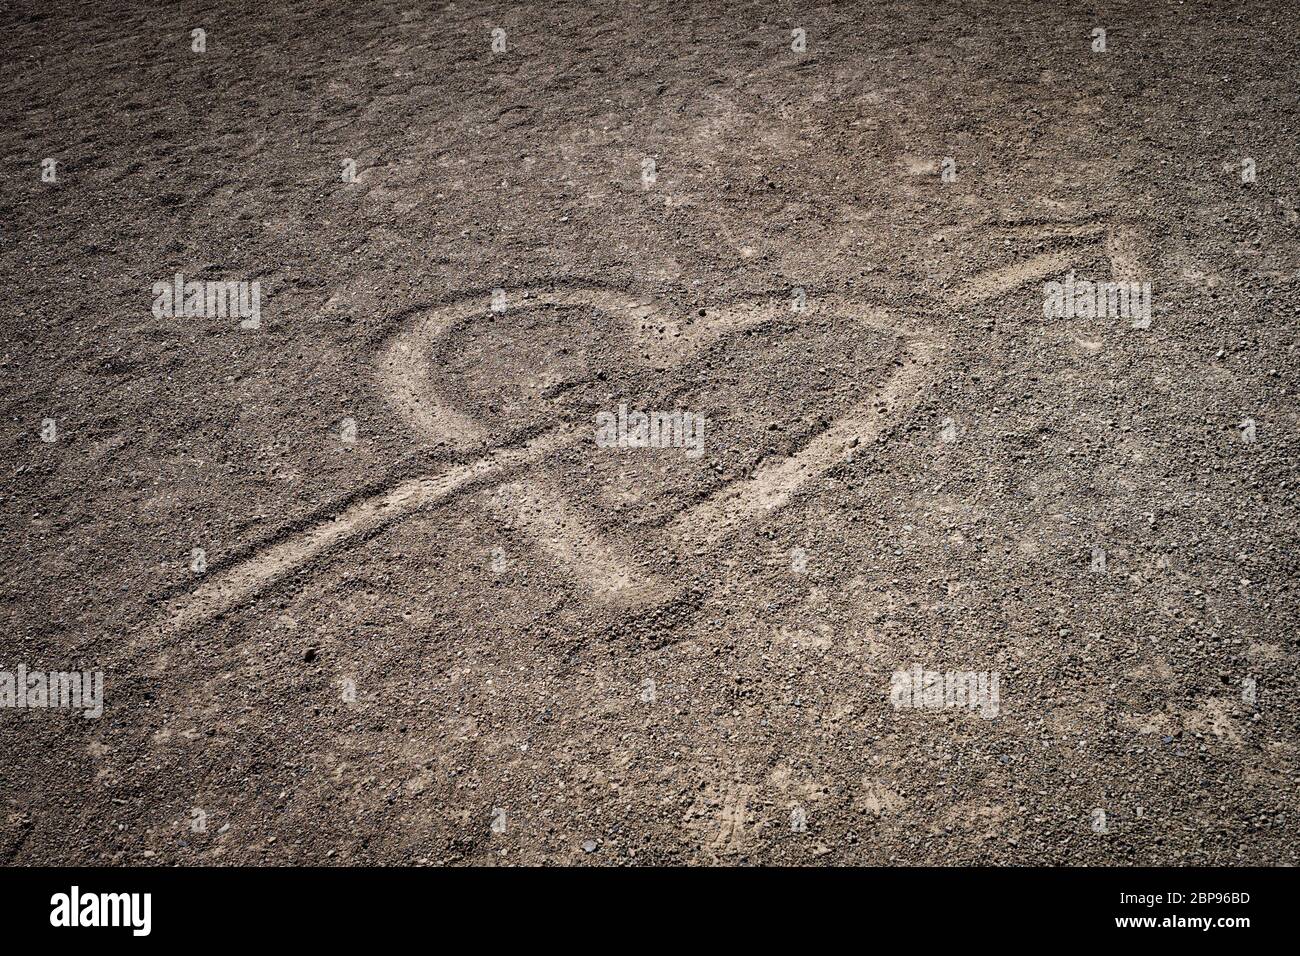 Cuore trafitto con la freccia disegnata nel suolo di origine vulcanica dell'isola di Tenerife Foto Stock